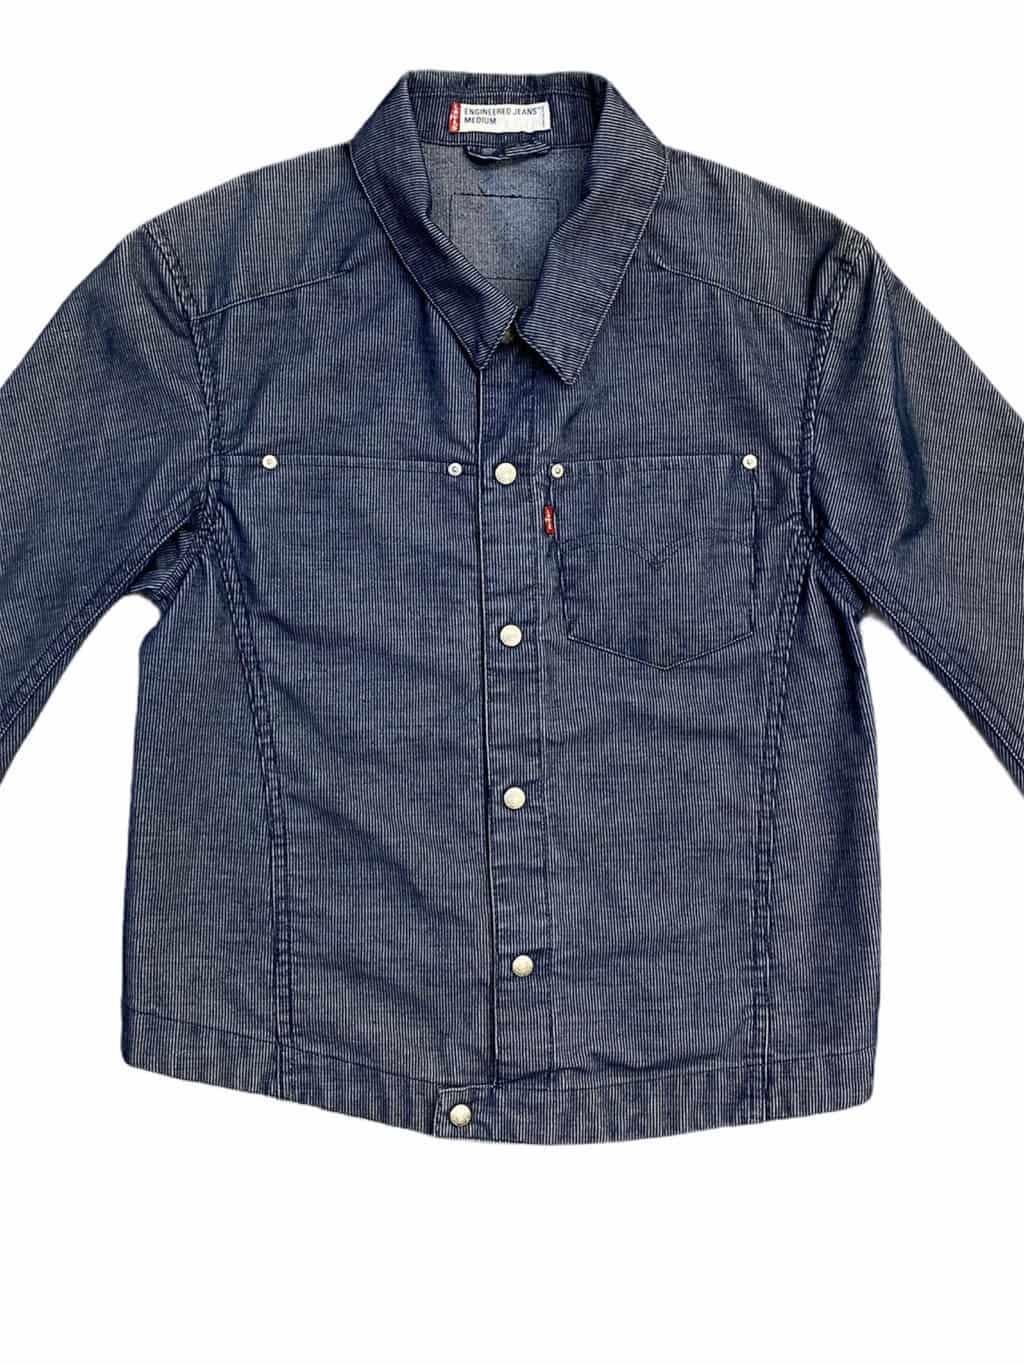 Vintage Y2K Levis engineer corduroy jacket in dark blue, two pocket - M -  St Cyr Vintage